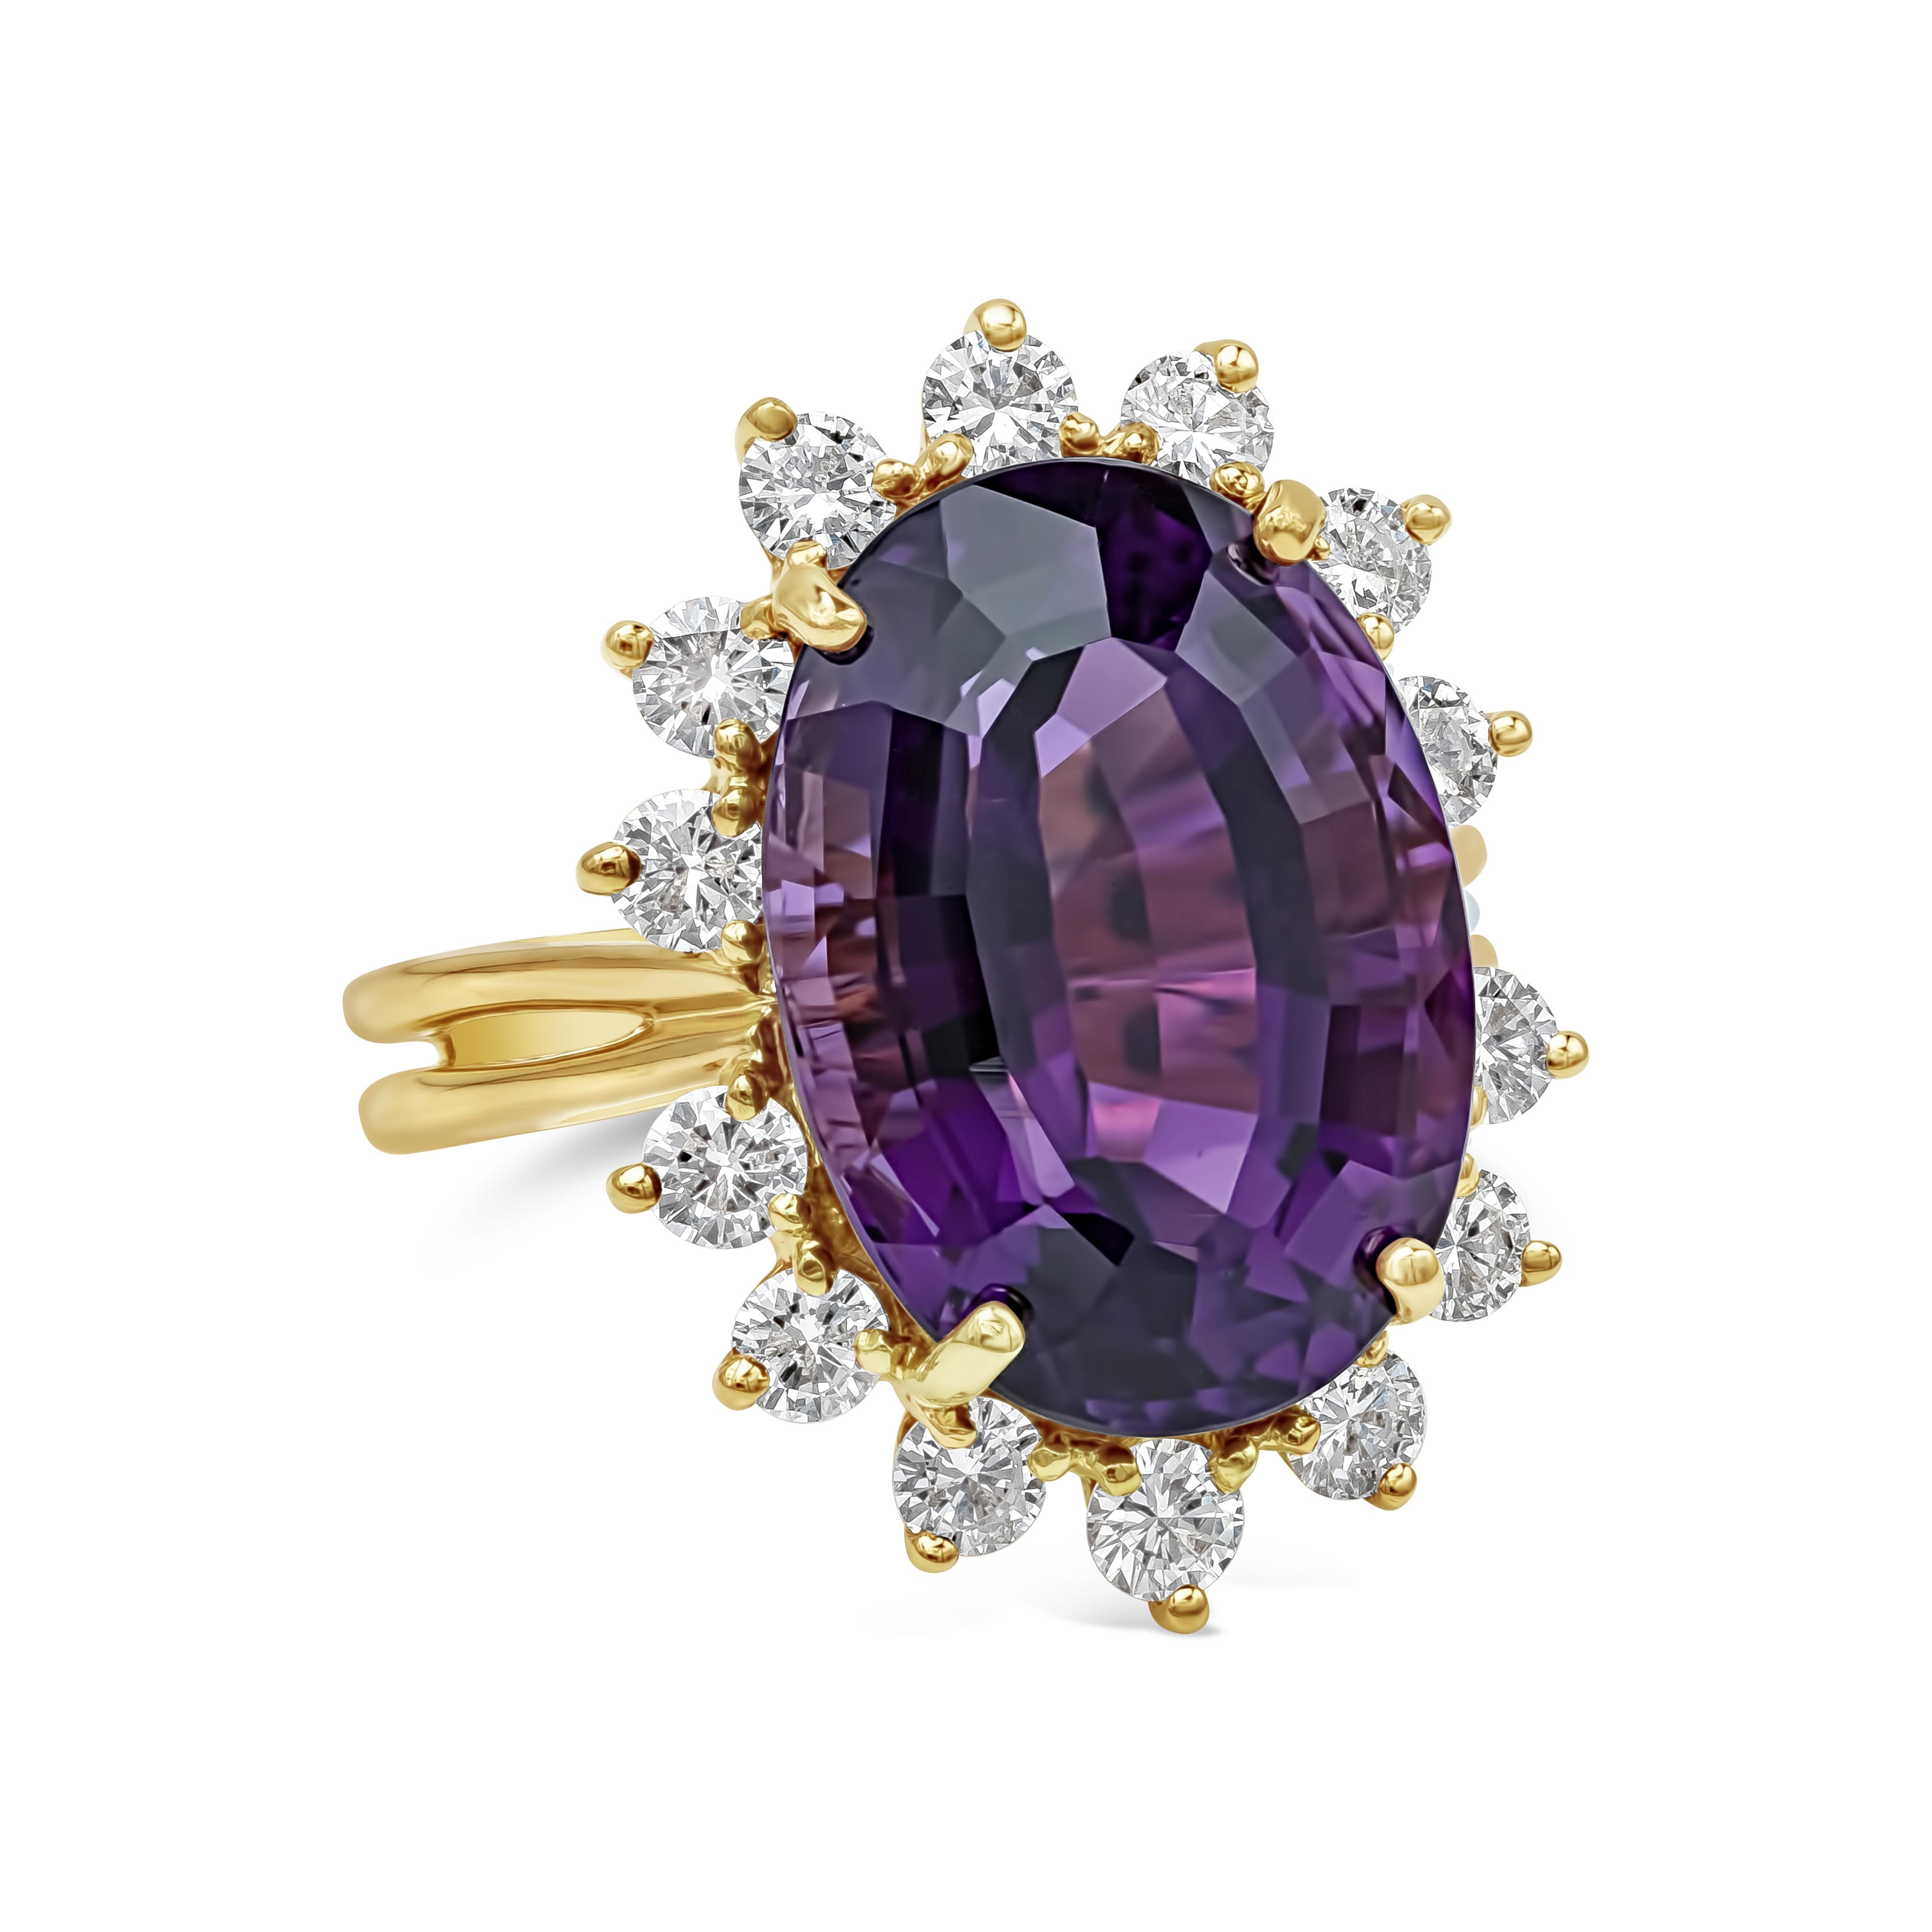 Cette magnifique bague de cocktail présente une améthyste violette ovale de 10,95 carats, entourée d'une rangée de diamants ronds de taille brillant, le tout serti dans une monture en or jaune 18 carats à deux rangs. Les diamants pèsent 1.15 carats